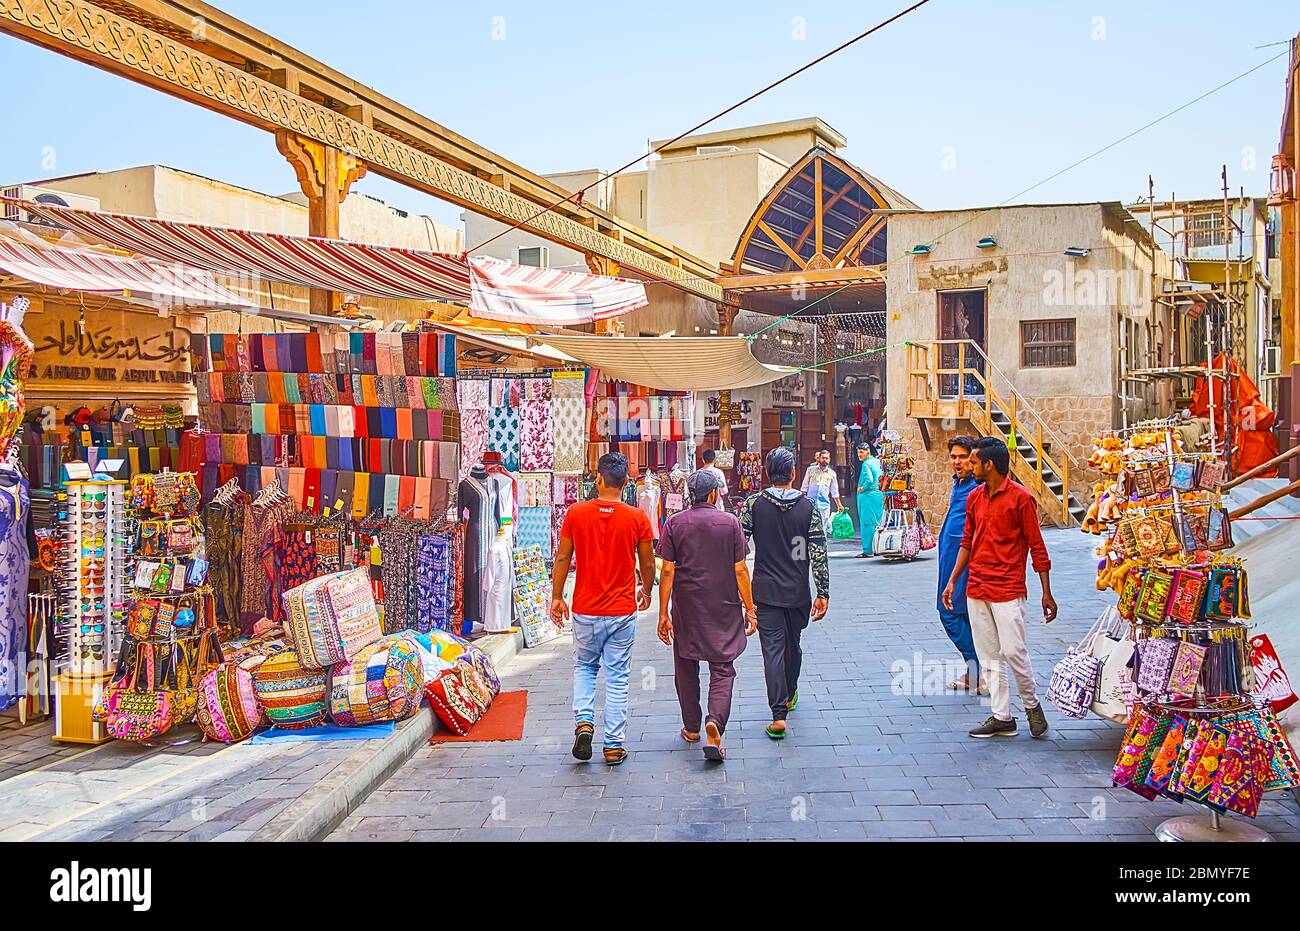 DUBAI, VAE - 2. MÄRZ 2020: Bur Dubai Grand Souq ist ein Markt im alten Stil mit vielen exotischen Souvenirs, interessanten Waren und Lebensmitteln, am 2. März in Dubai Stockfoto